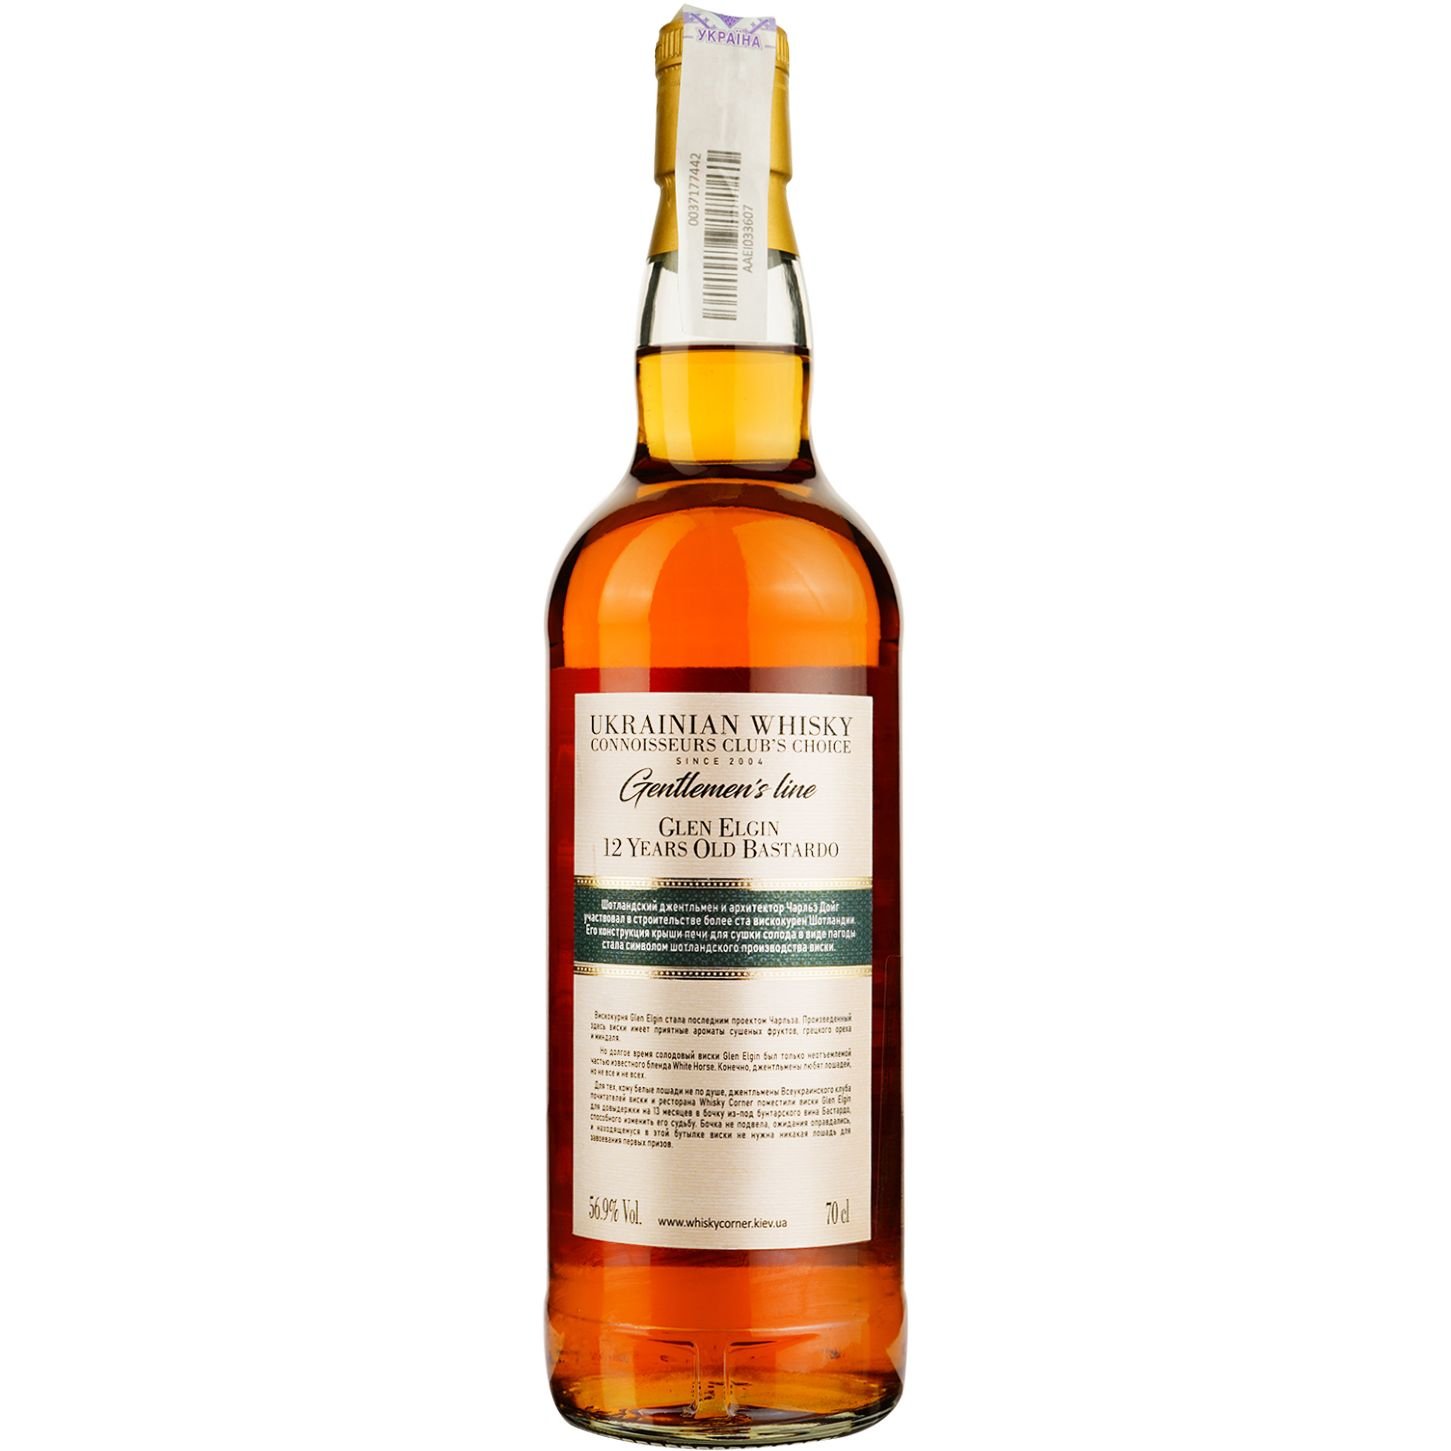 Виски Glen Elgin 12 Years Old Bastardo Single Malt Scotch Whisky, в подарочной упаковке, 56,9%, 0,7 л - фото 4